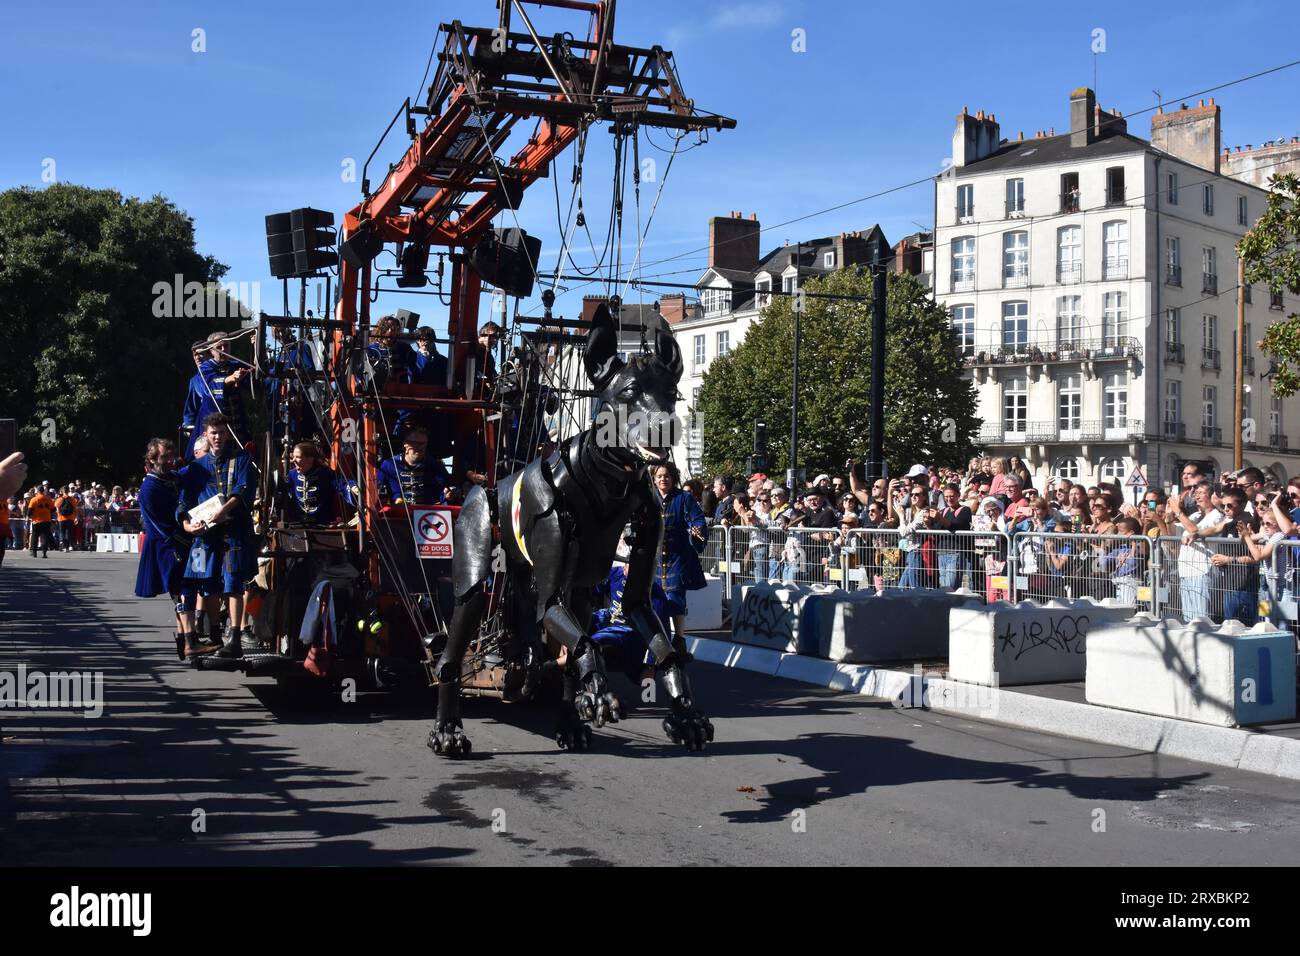 Parade Royal de Luxe, The bulldog and Xolo the dog, Nantes France Stock Photo